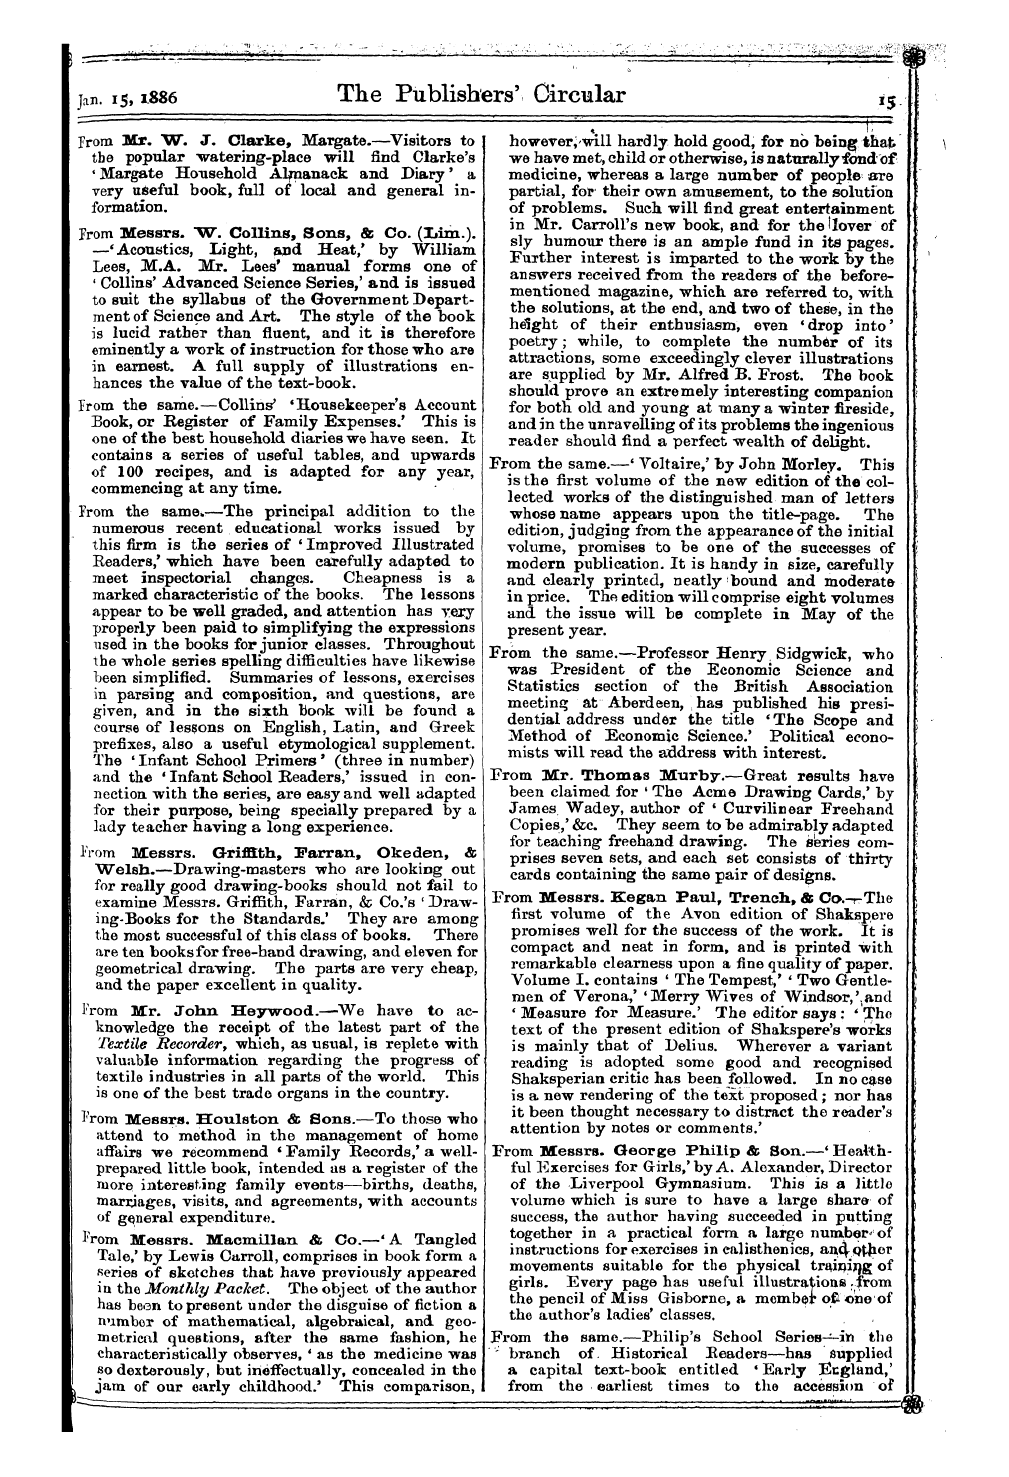 Publishers’ Circular (1880-1890): jS F Y, 1st edition - Ar01701